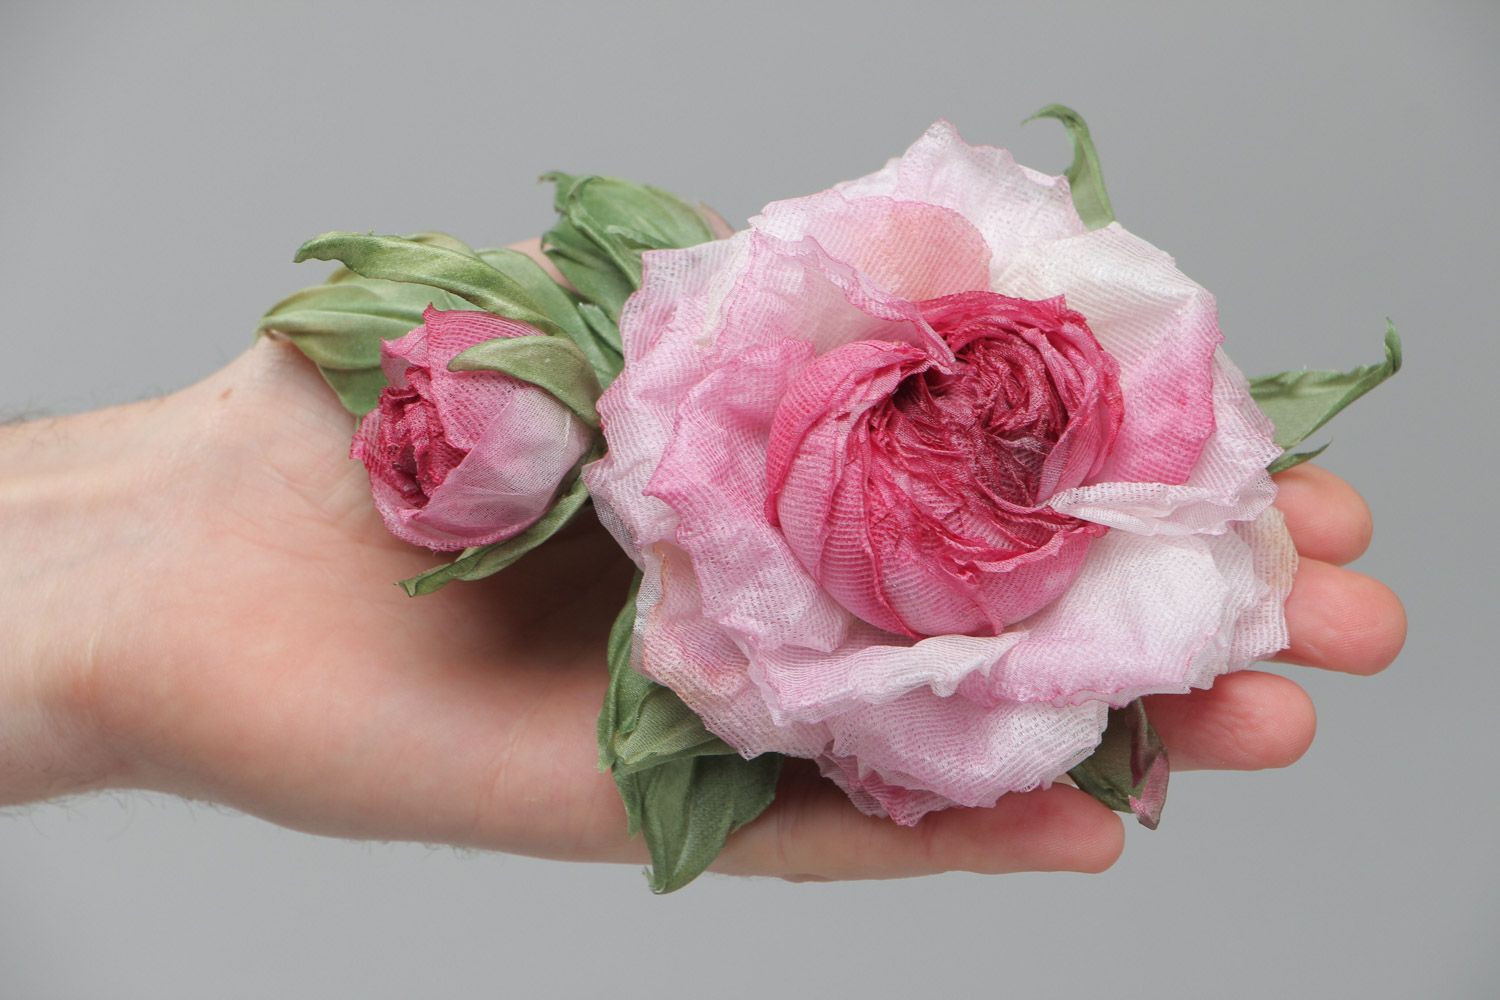 Massive exklusive Rose Brosche aus Stoff für elegante Looks und schicke Damen foto 5